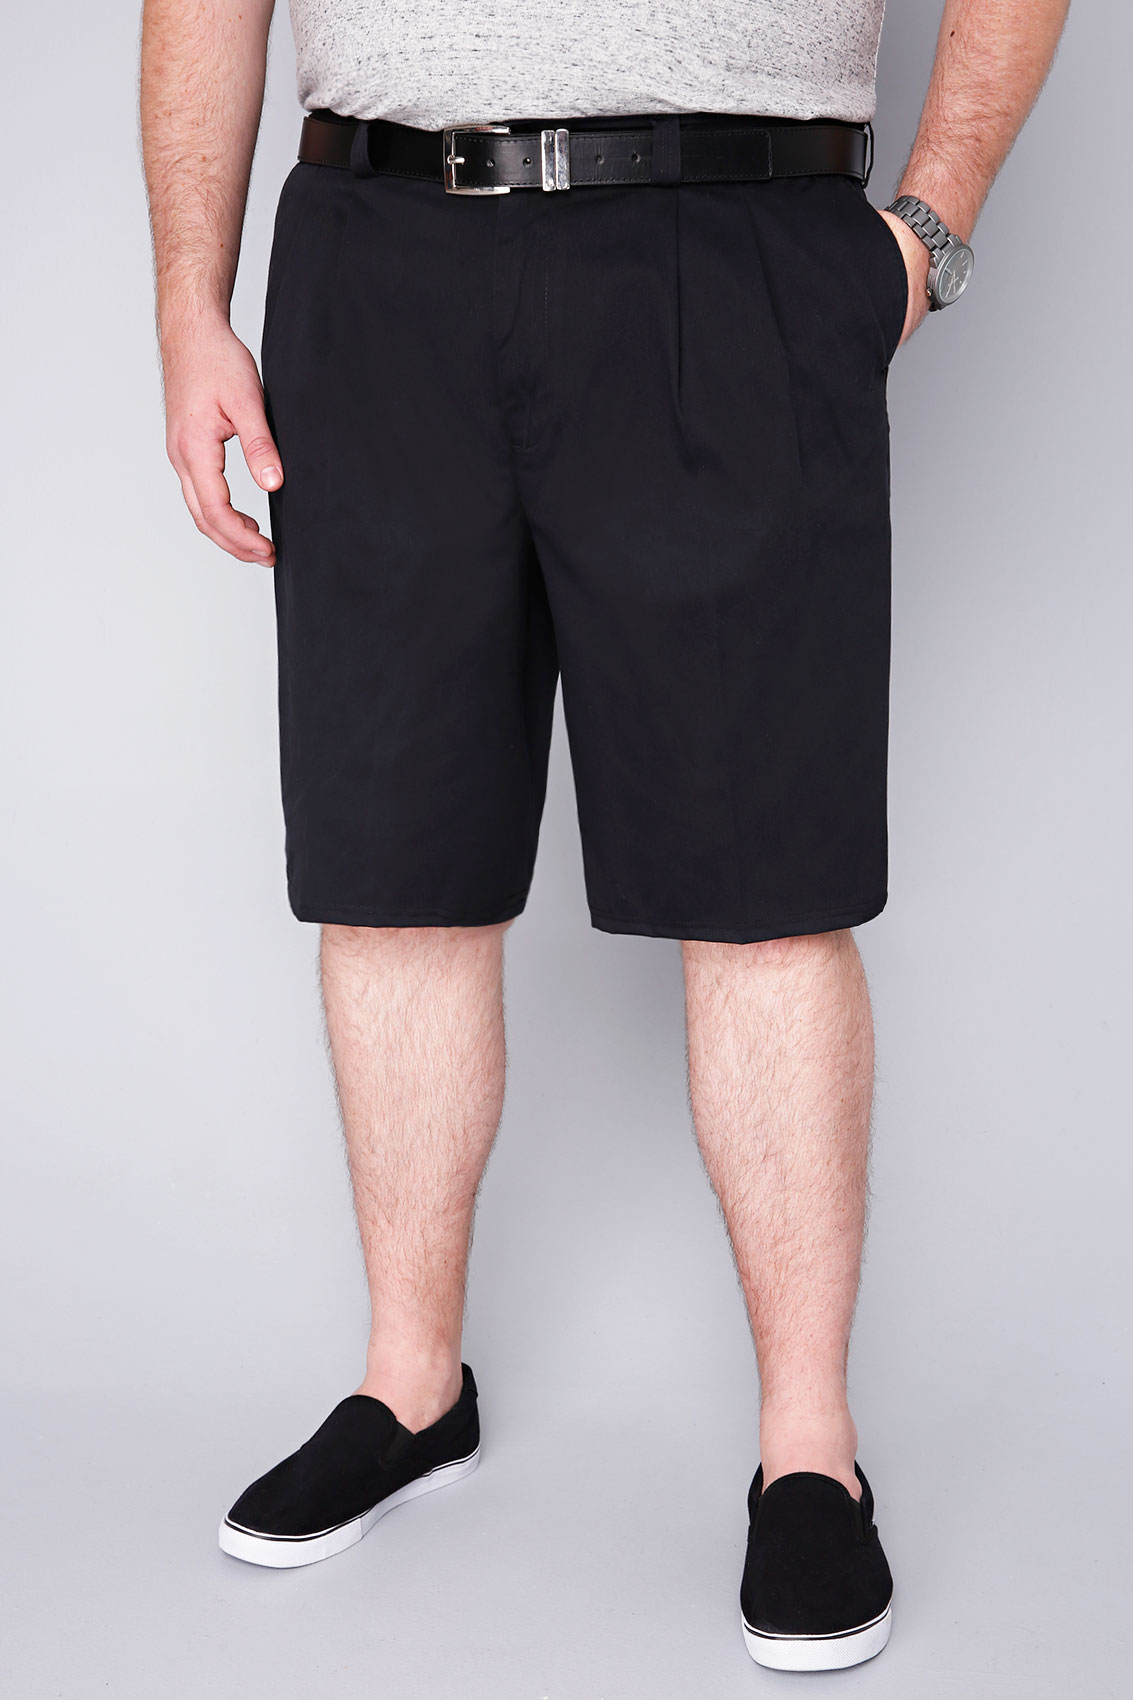 Black Chino Shorts With Elasticated Waist Insert Extra large sizes